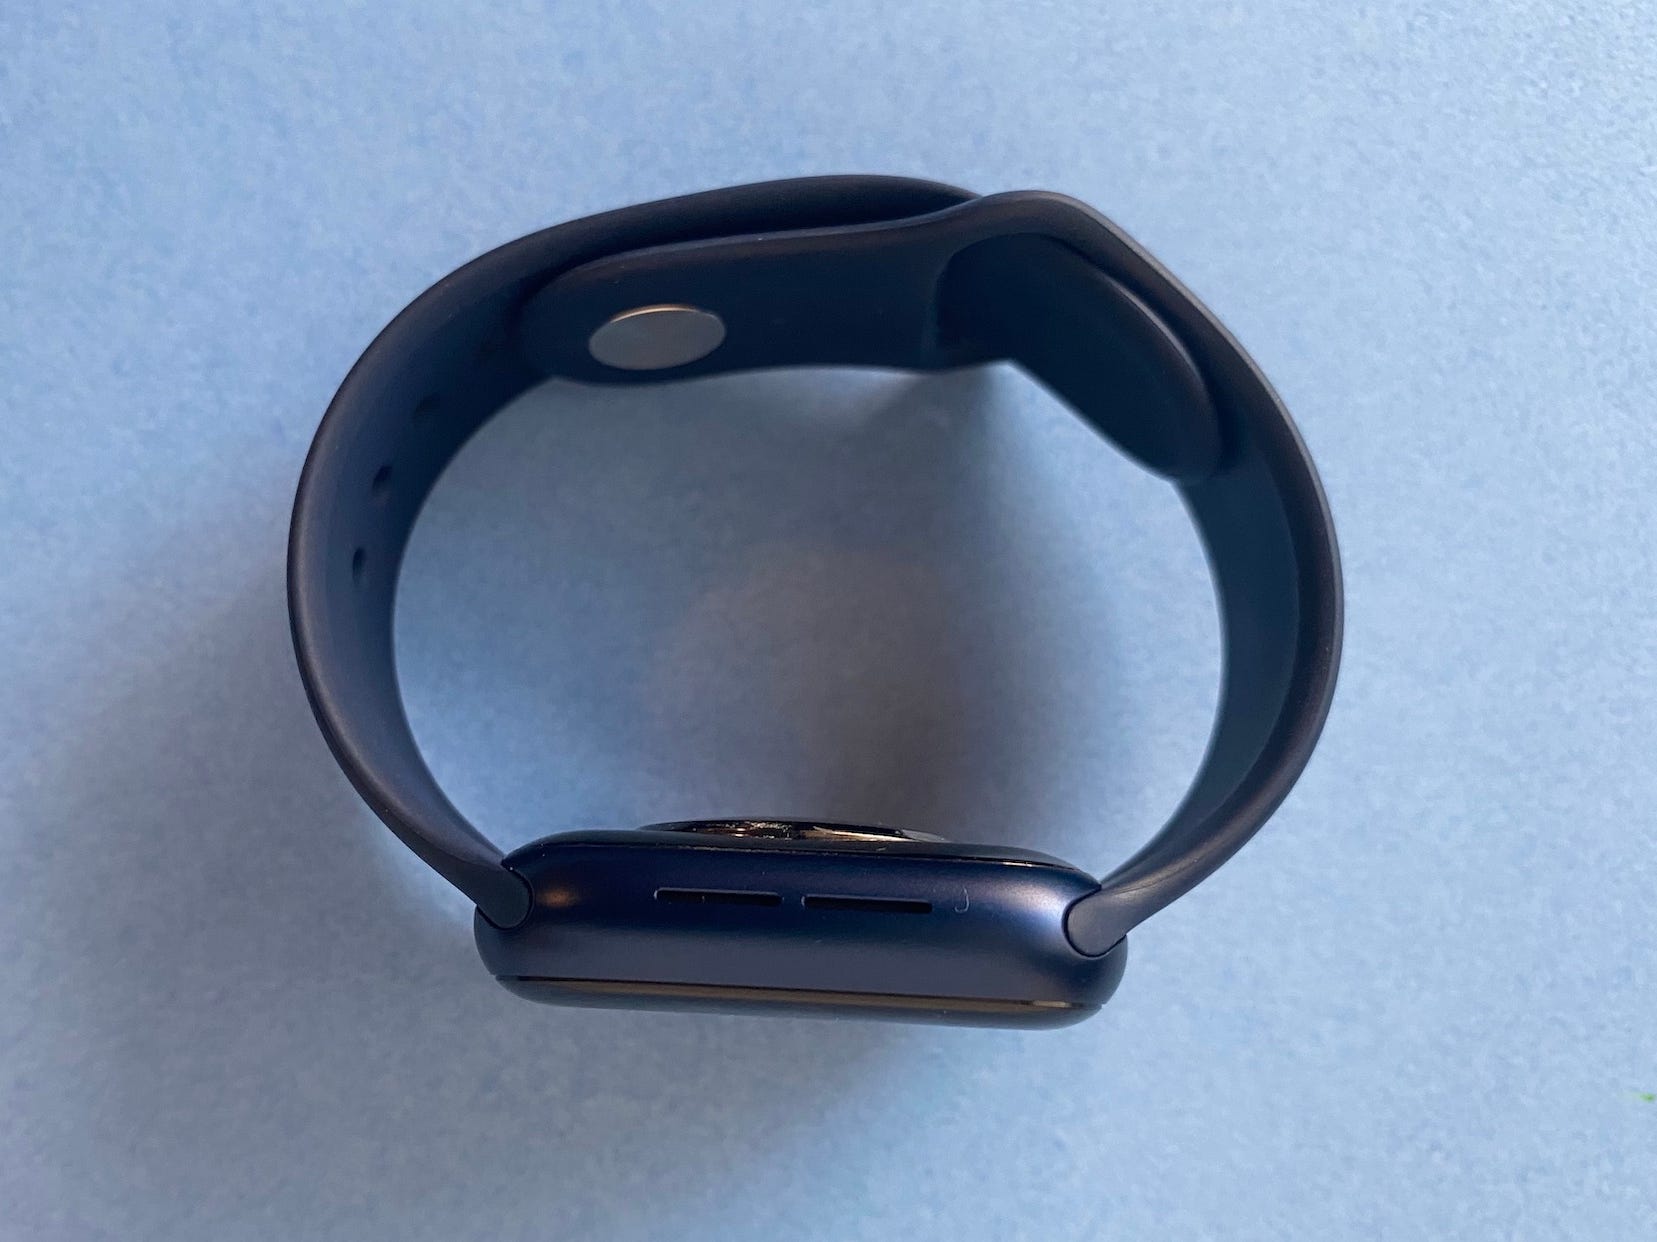 Apple Watch Blue